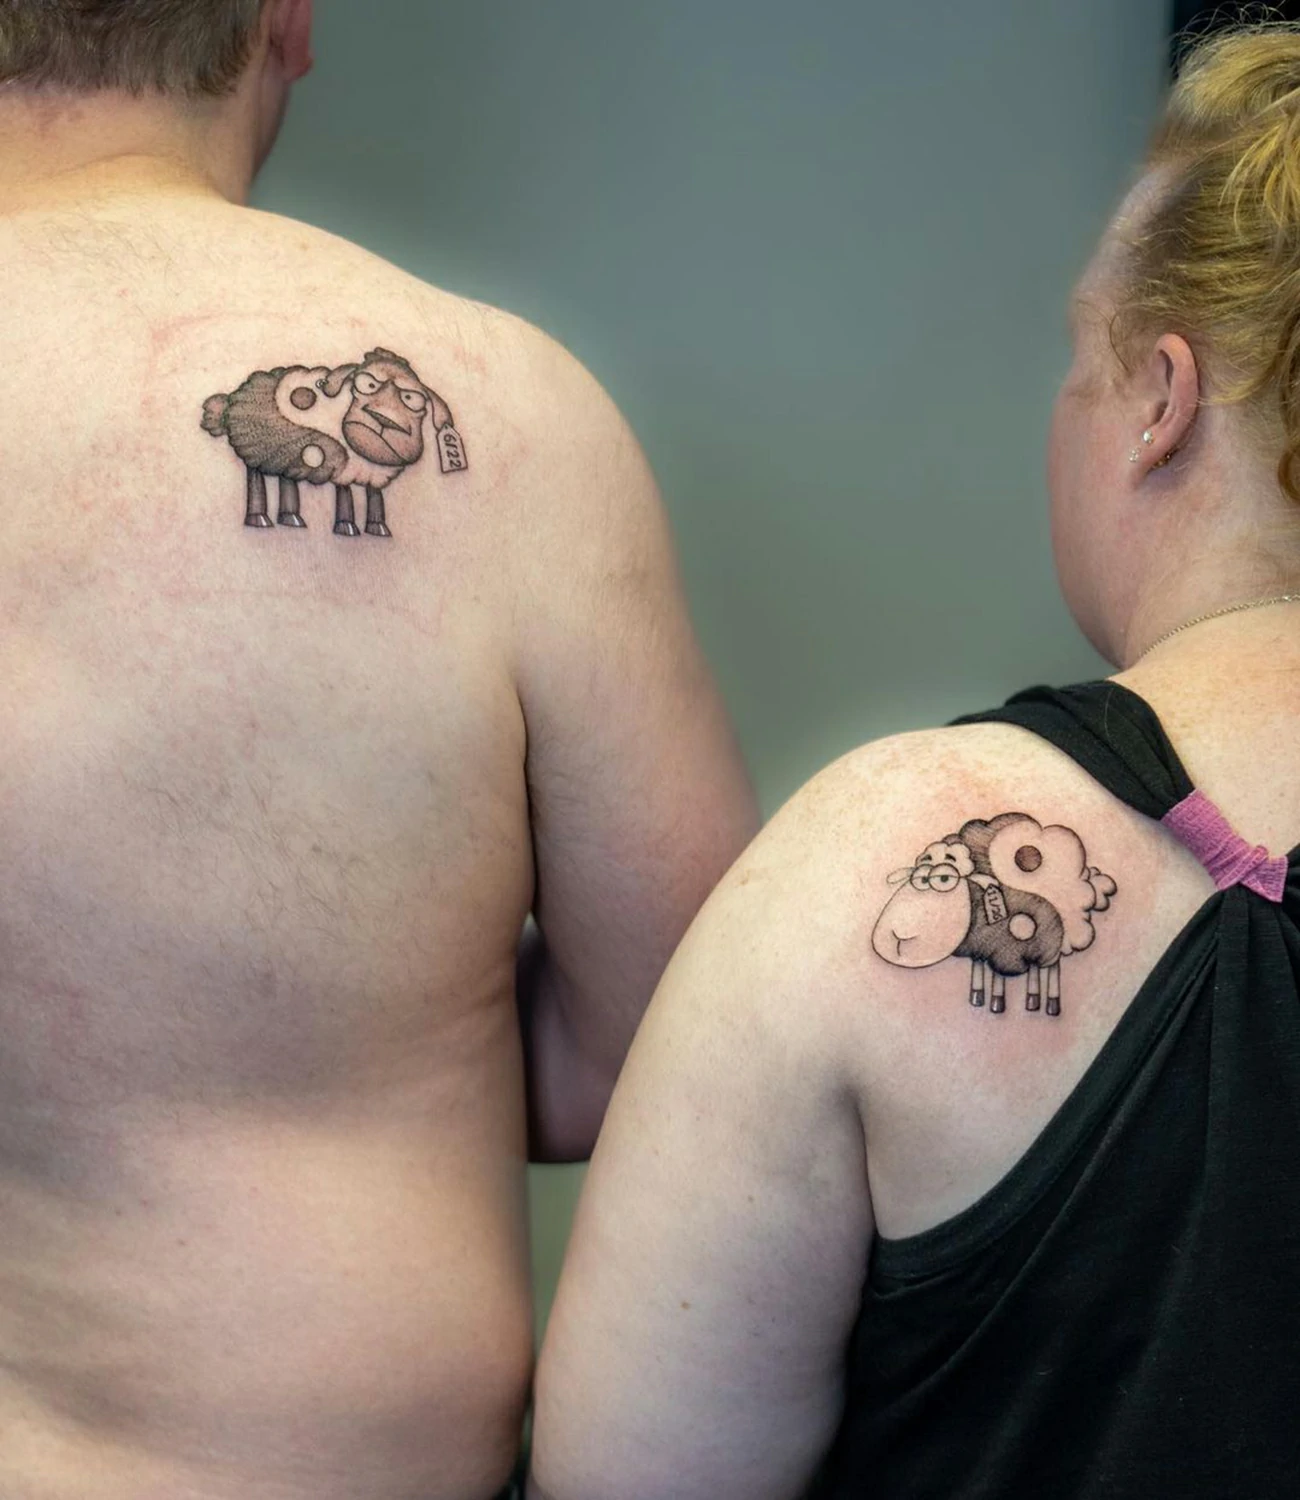 Tattoos to Represent Siblings